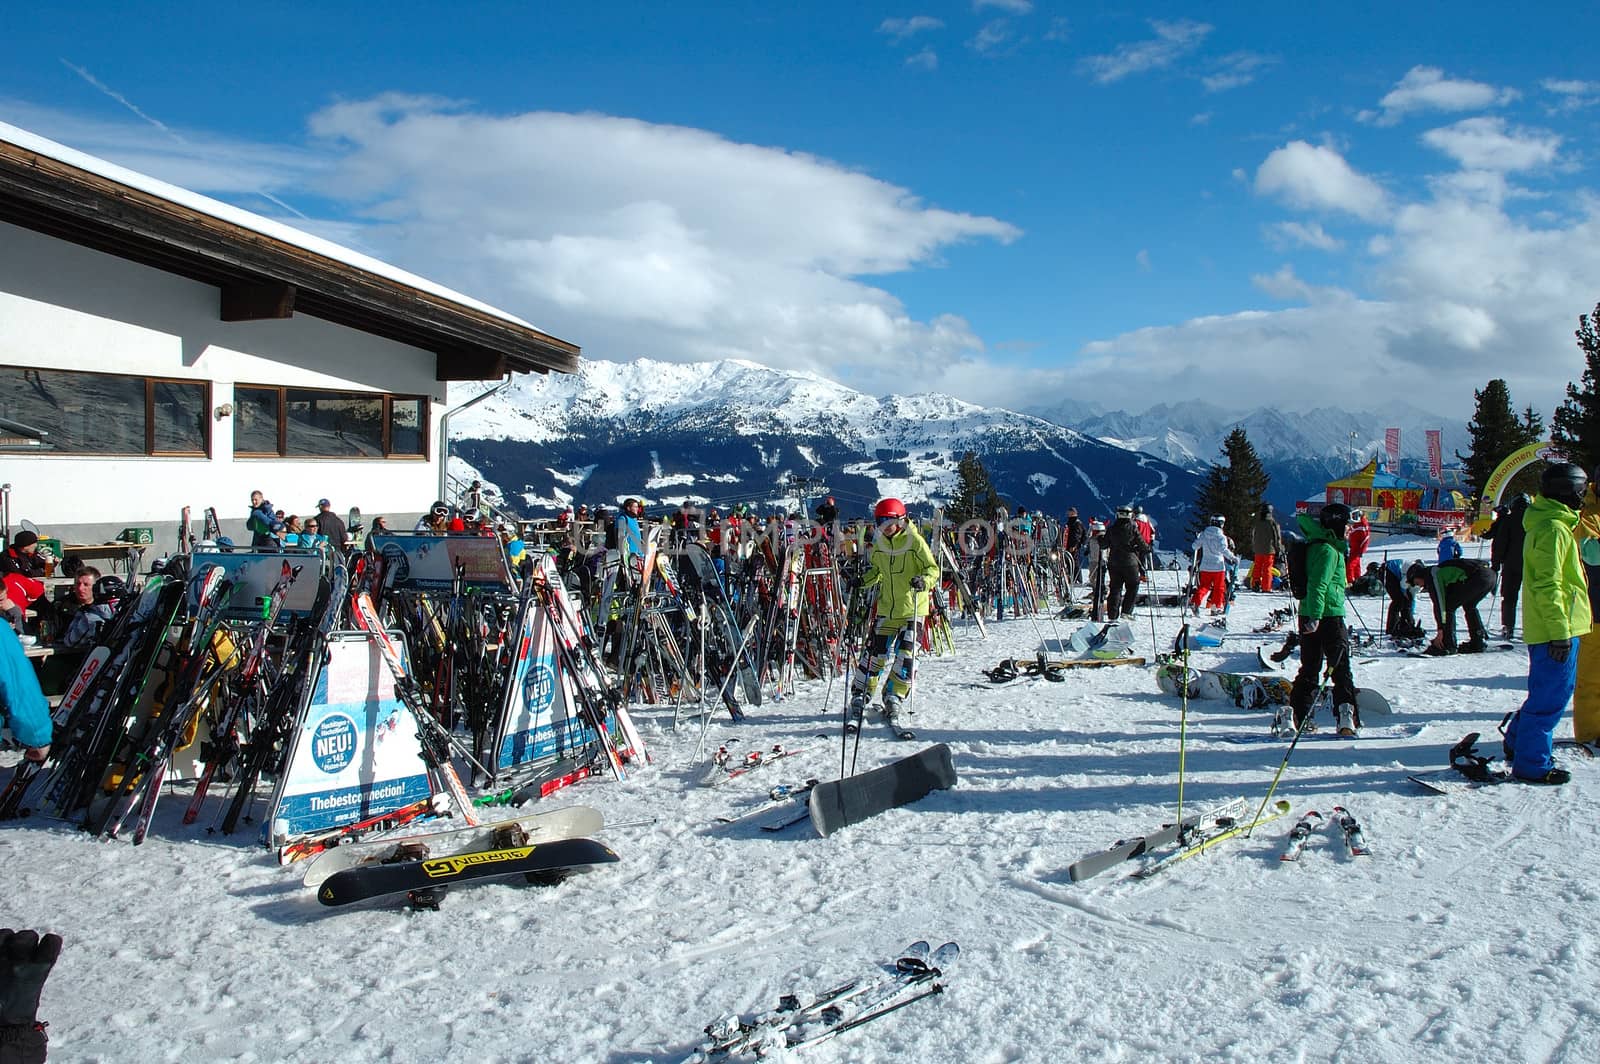 Ski and skiers by janhetman